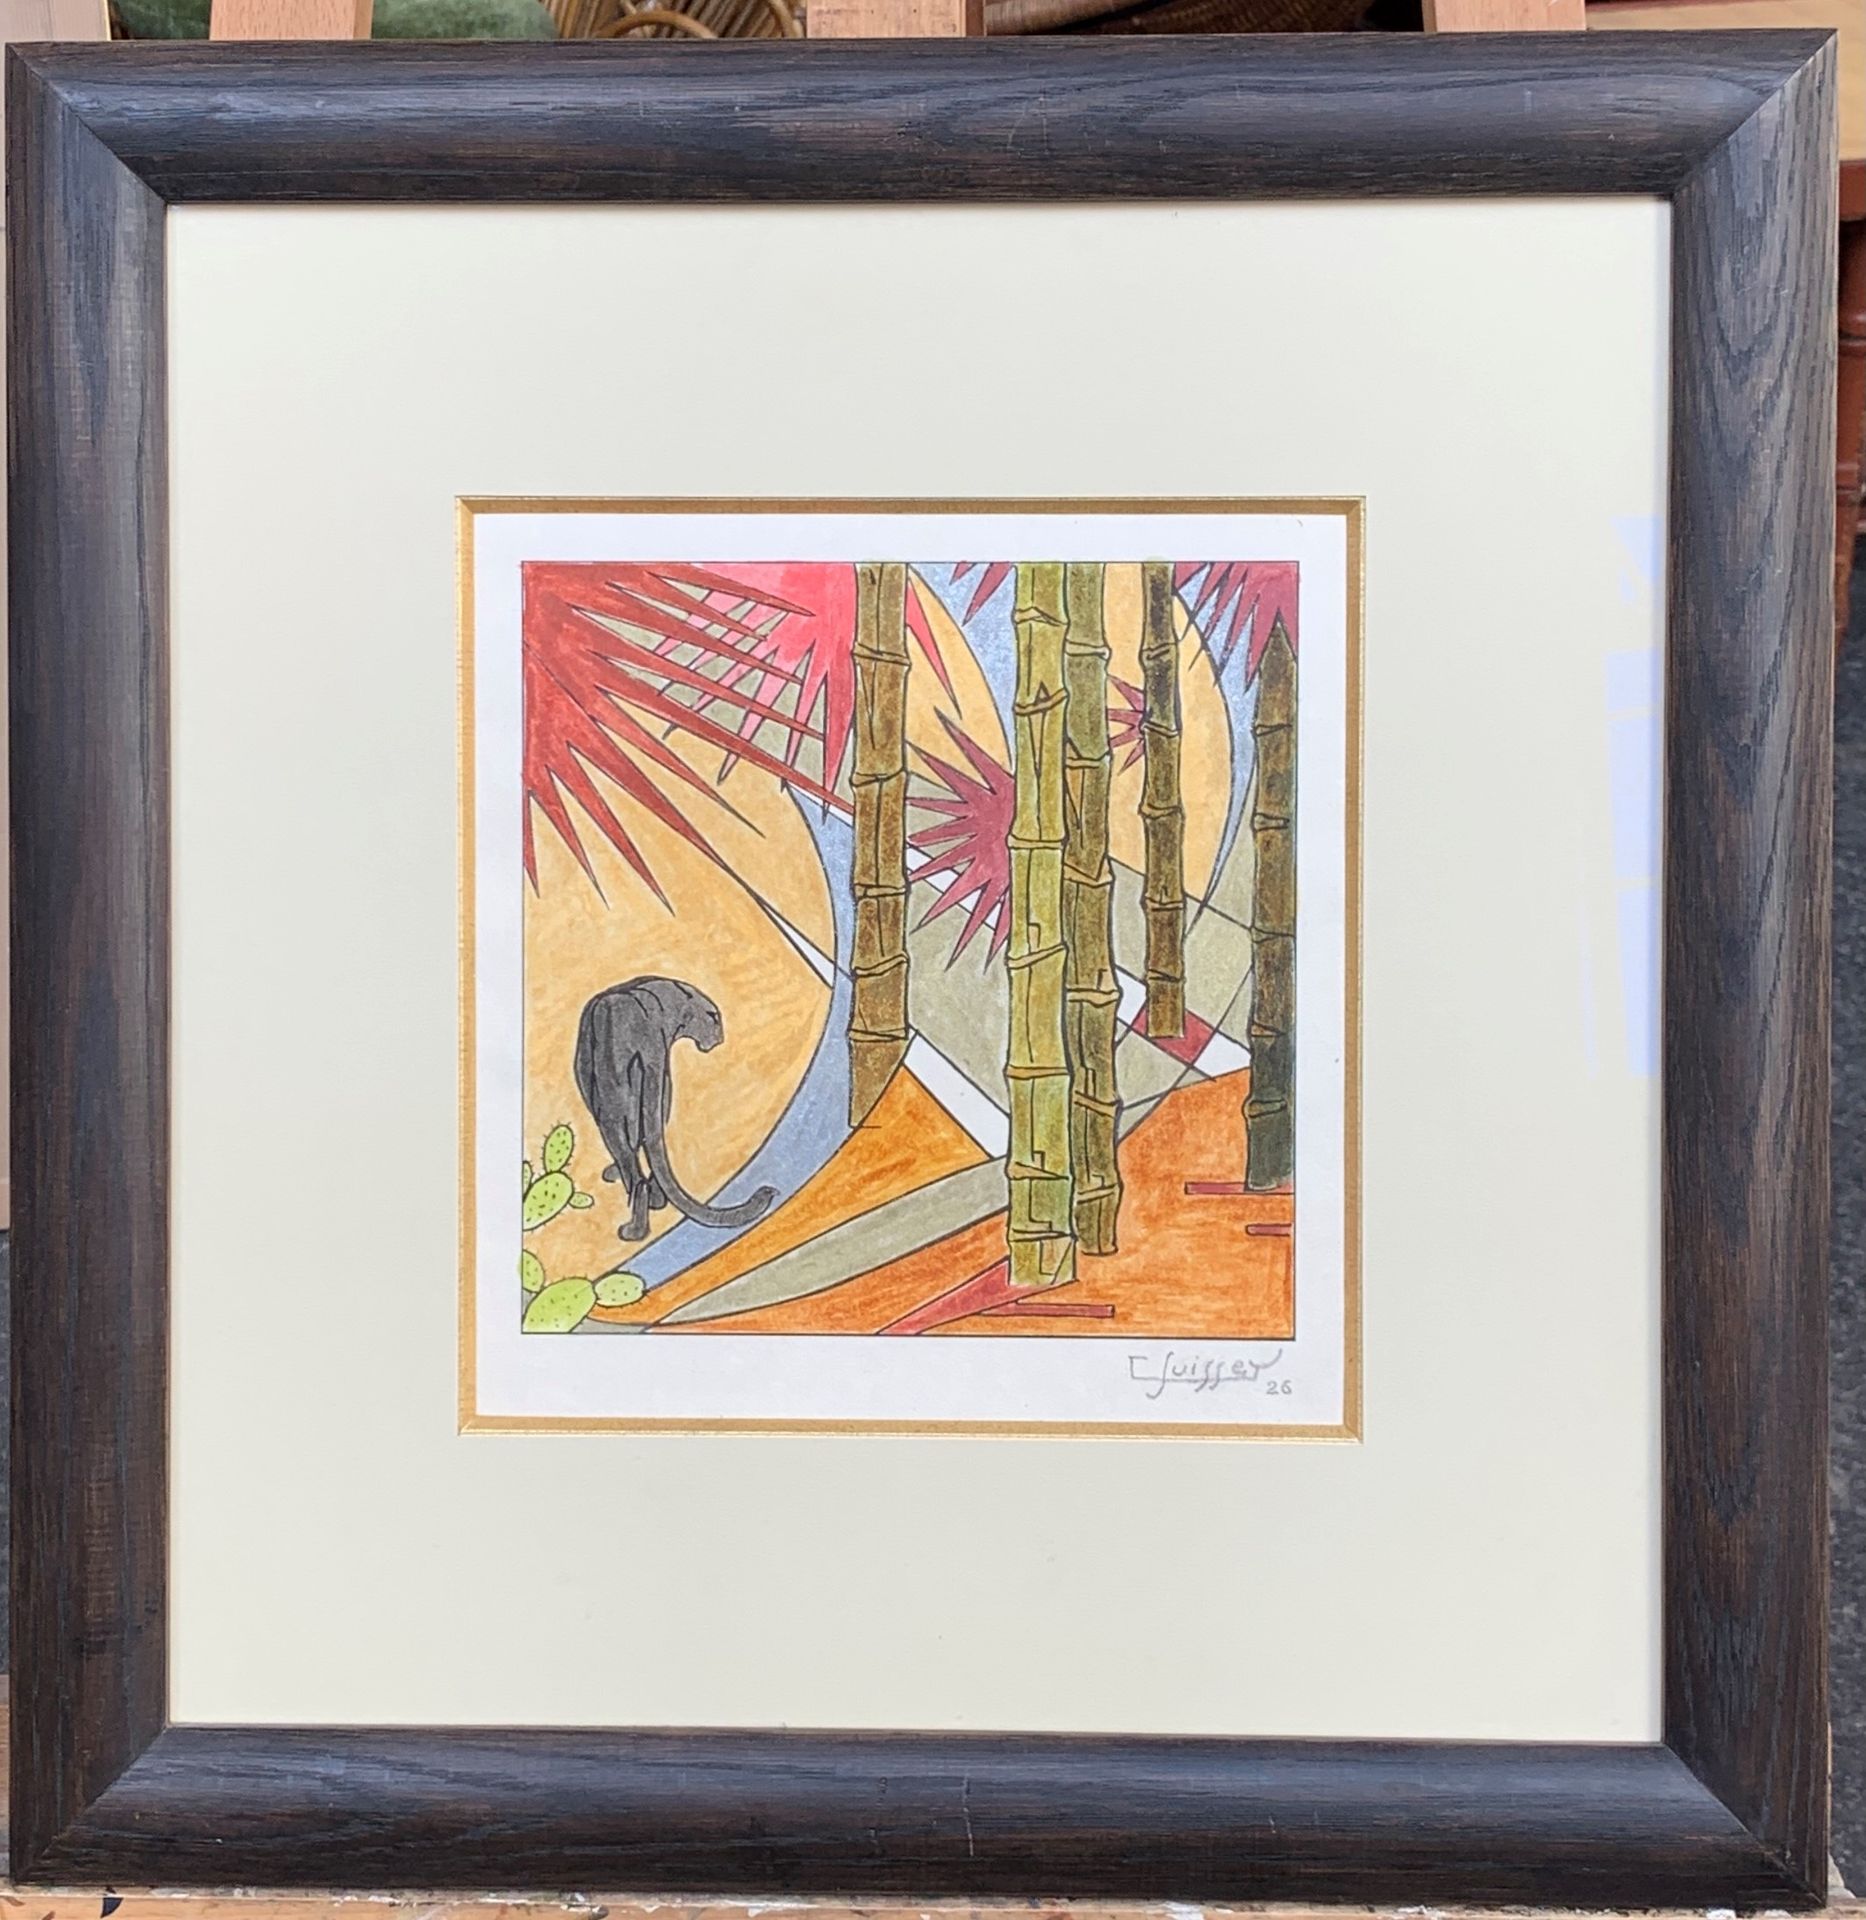 GASTON SUISSE (1896-1988) Pantera Negra, 1926

Grabado en madera, sobre papel pe&hellip;